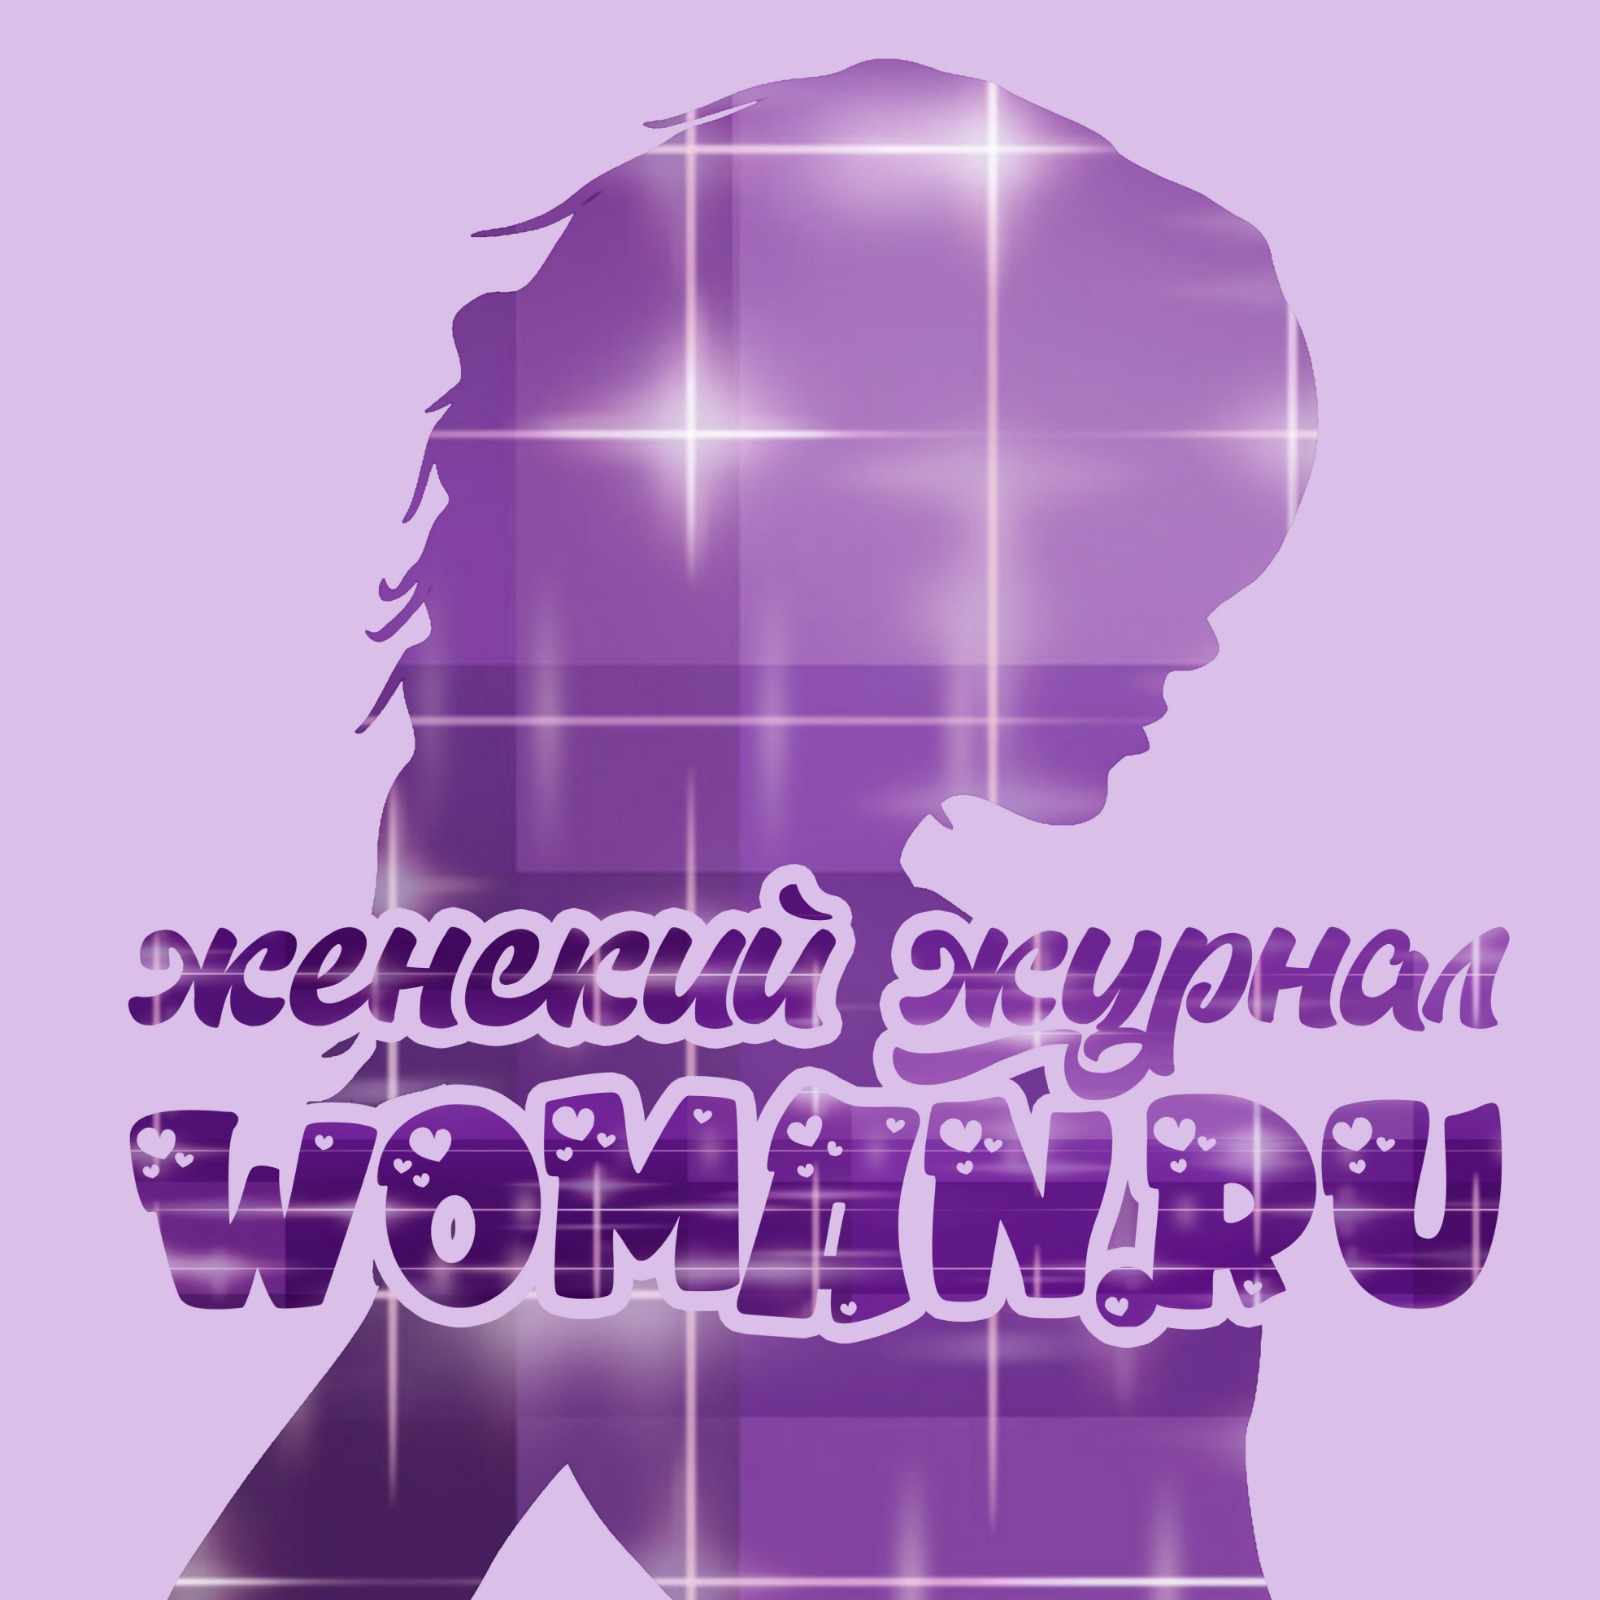 Женский журнал Woman.ru: звезды, мода, красота, любовь, секс, гороскопы, психология, дети и здоровье | WOMAN